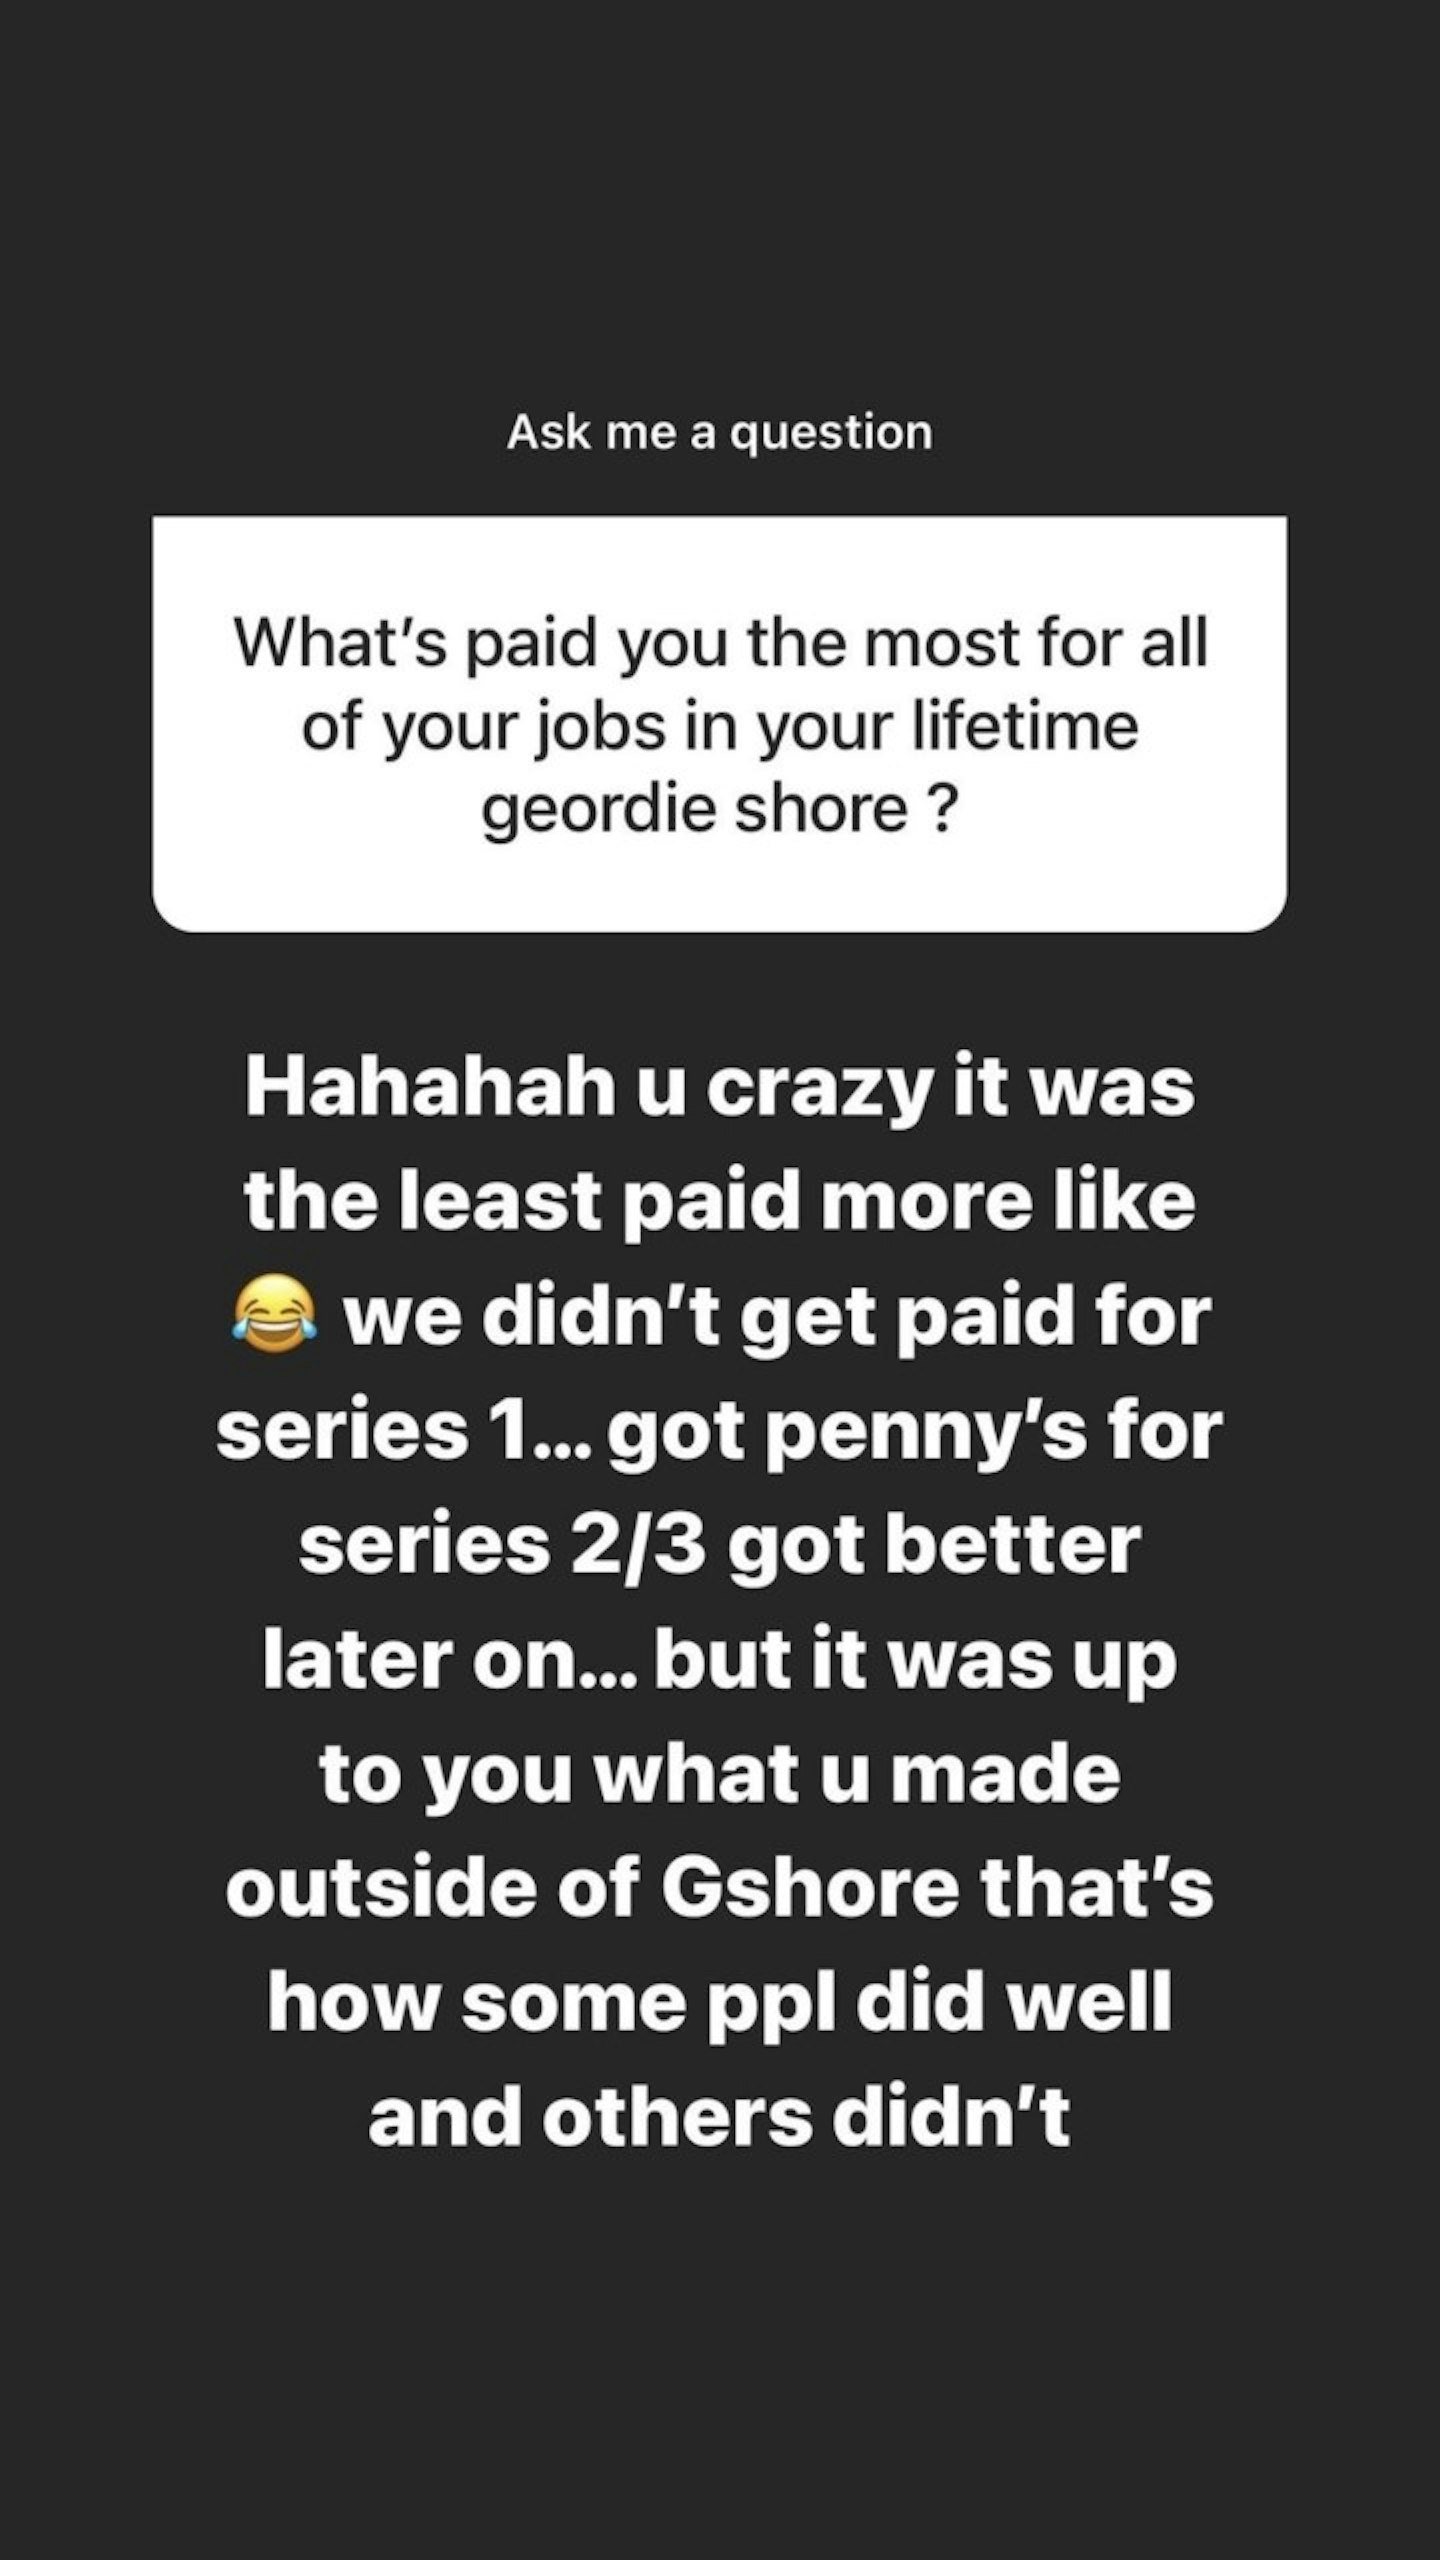 Geordie Shore salary